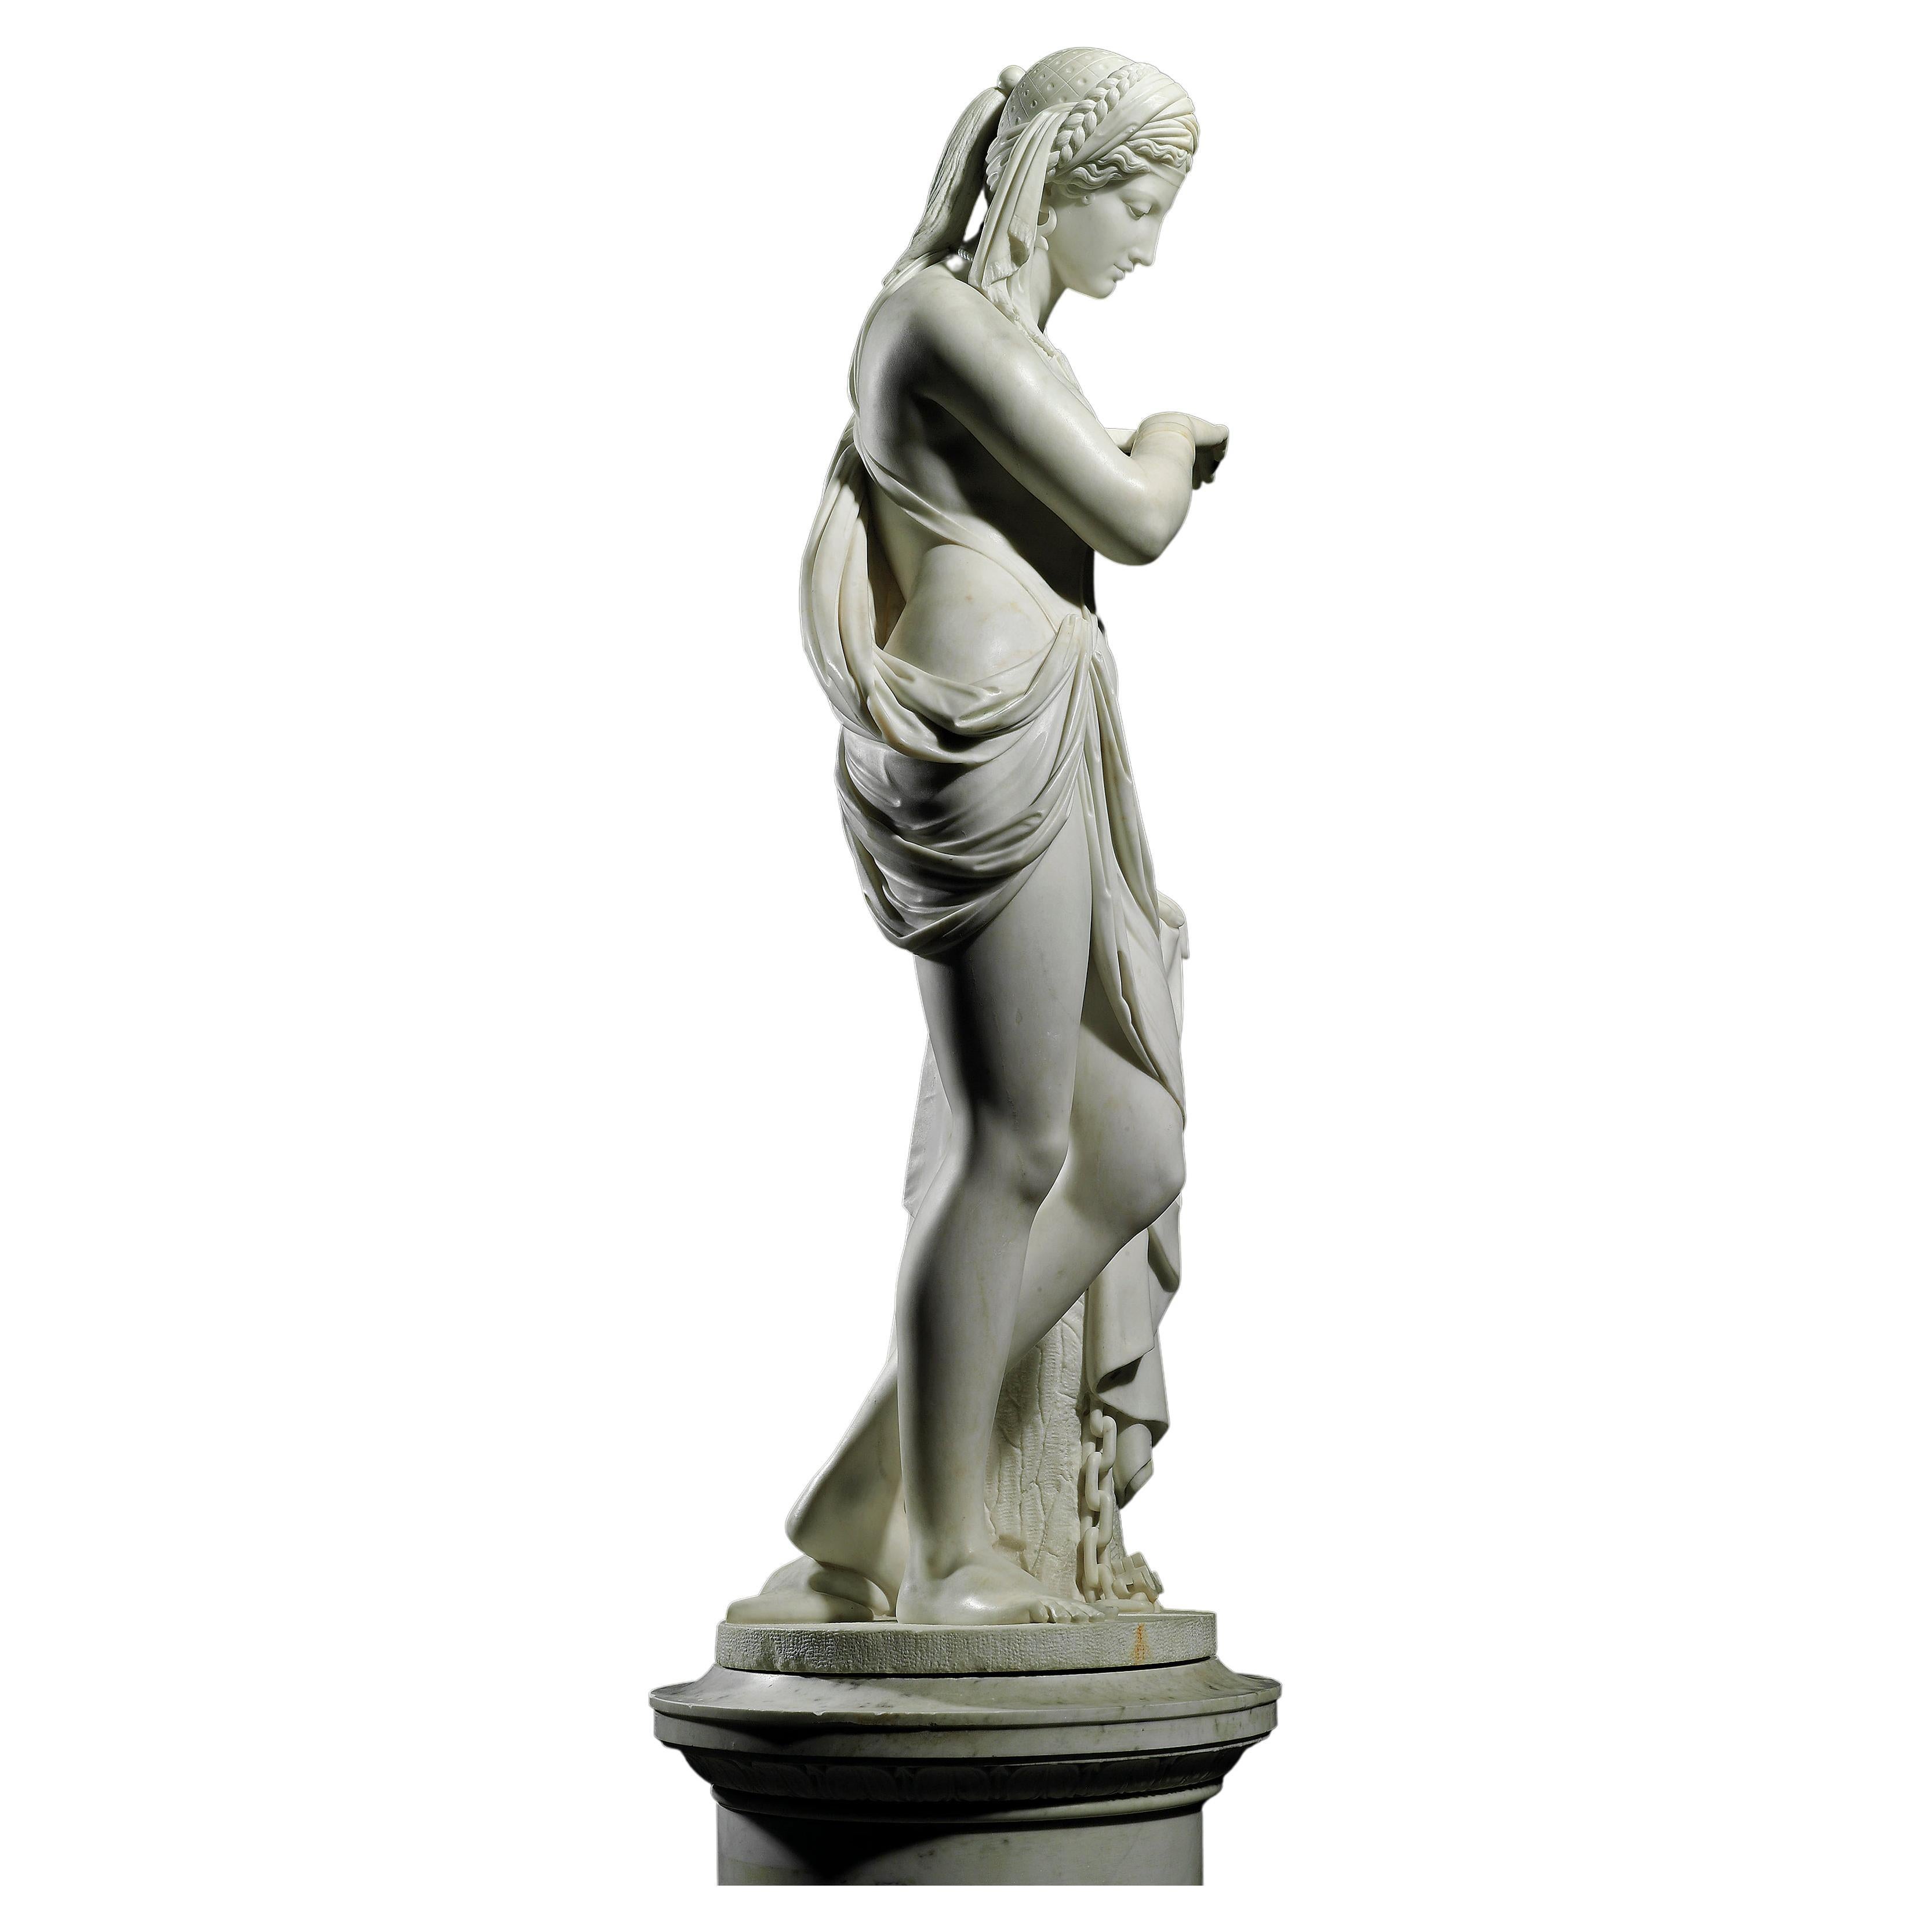 Scipione Tadolini était un sculpteur expérimenté dont le talent s'étendait du néoclassicisme au romantisme. Ses ancêtres issus d'une dynastie de sculpteurs romains ont exercé une influence profonde et durable sur la production artistique de la Ville